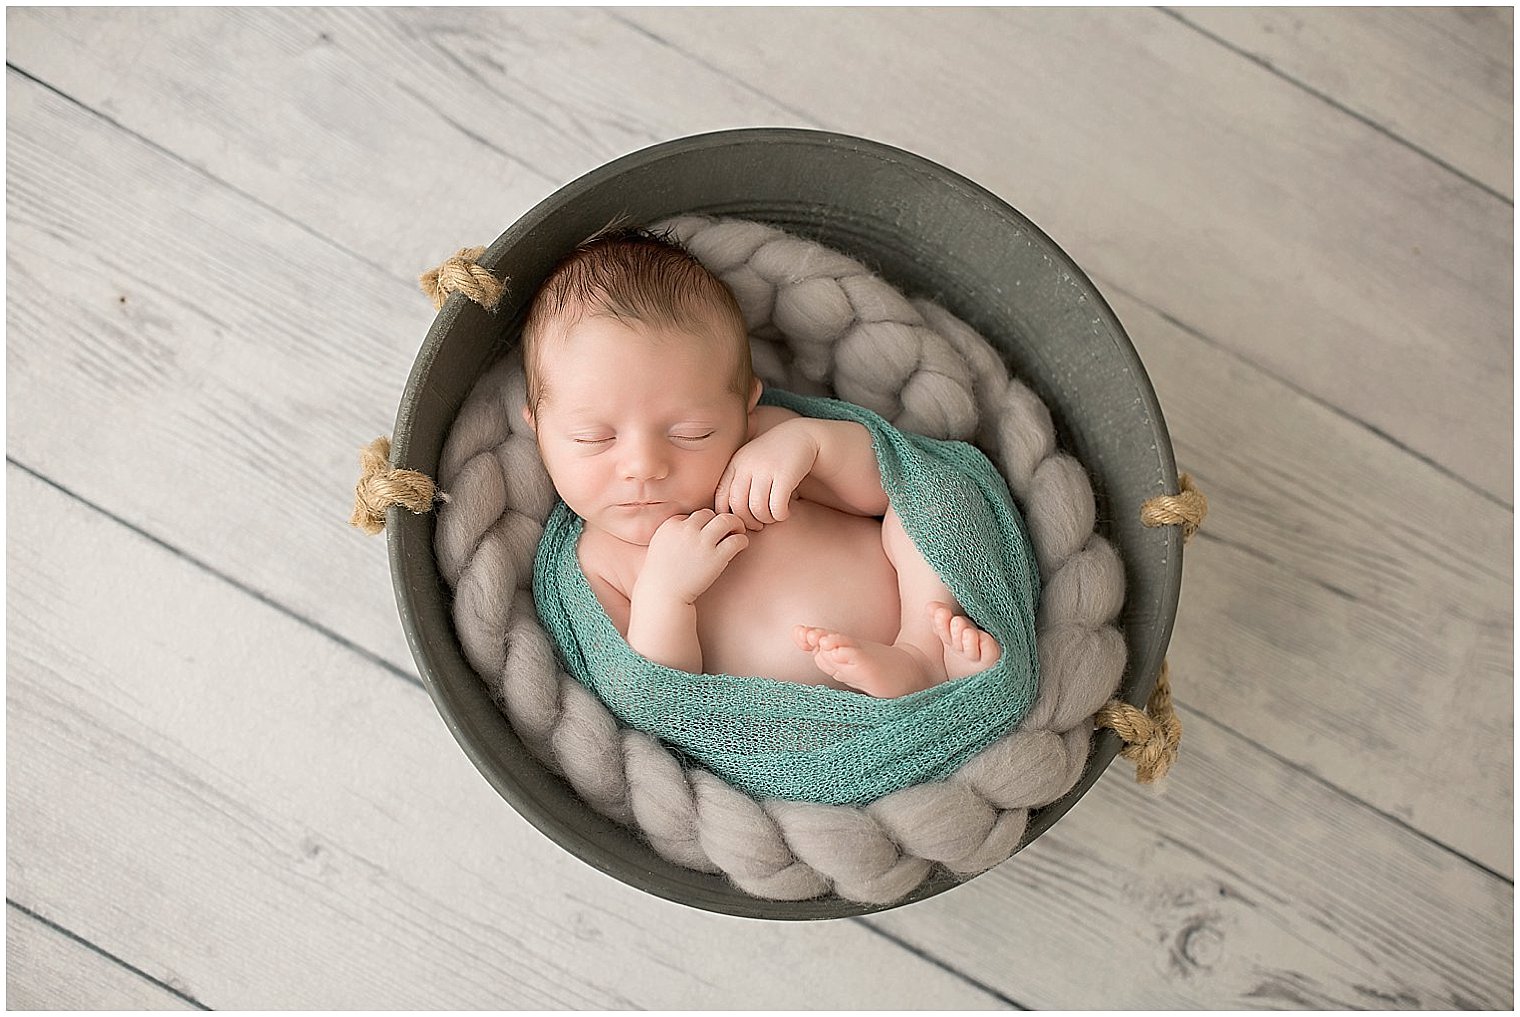 Newborn in a tub | Photo by Idalia Photography